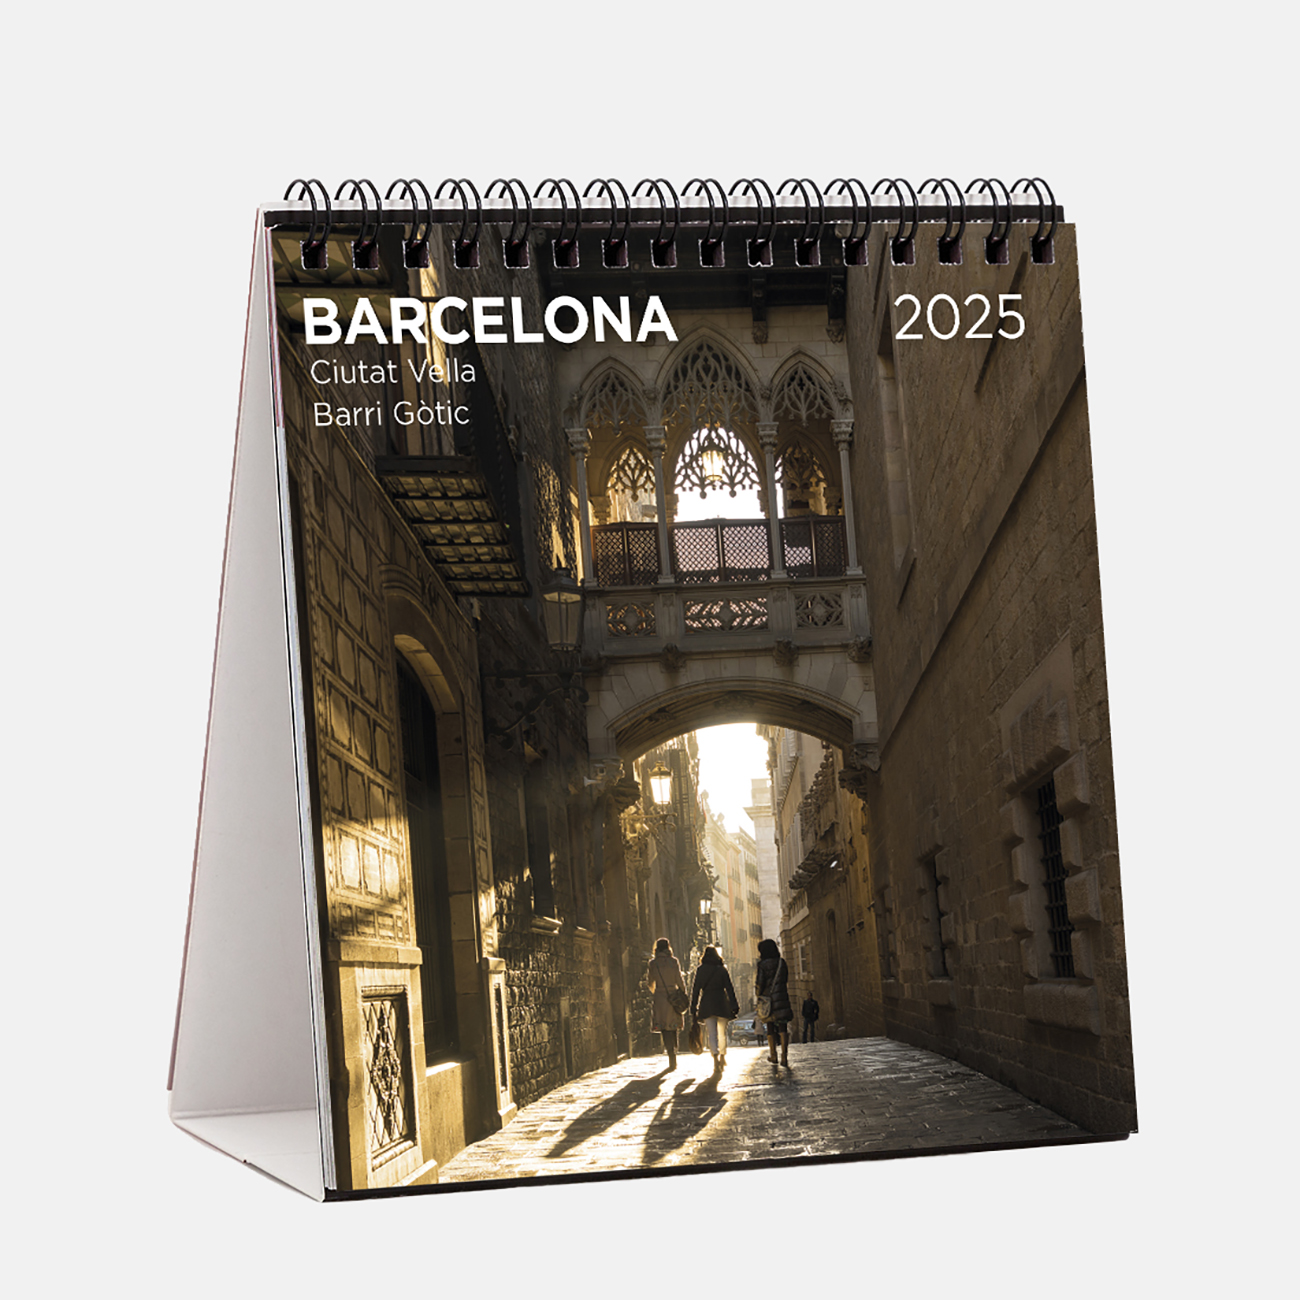 Calendar 2025 Barcelona (Ciutat Vella) s25b2 calendario sobremesa 2025 barcelona